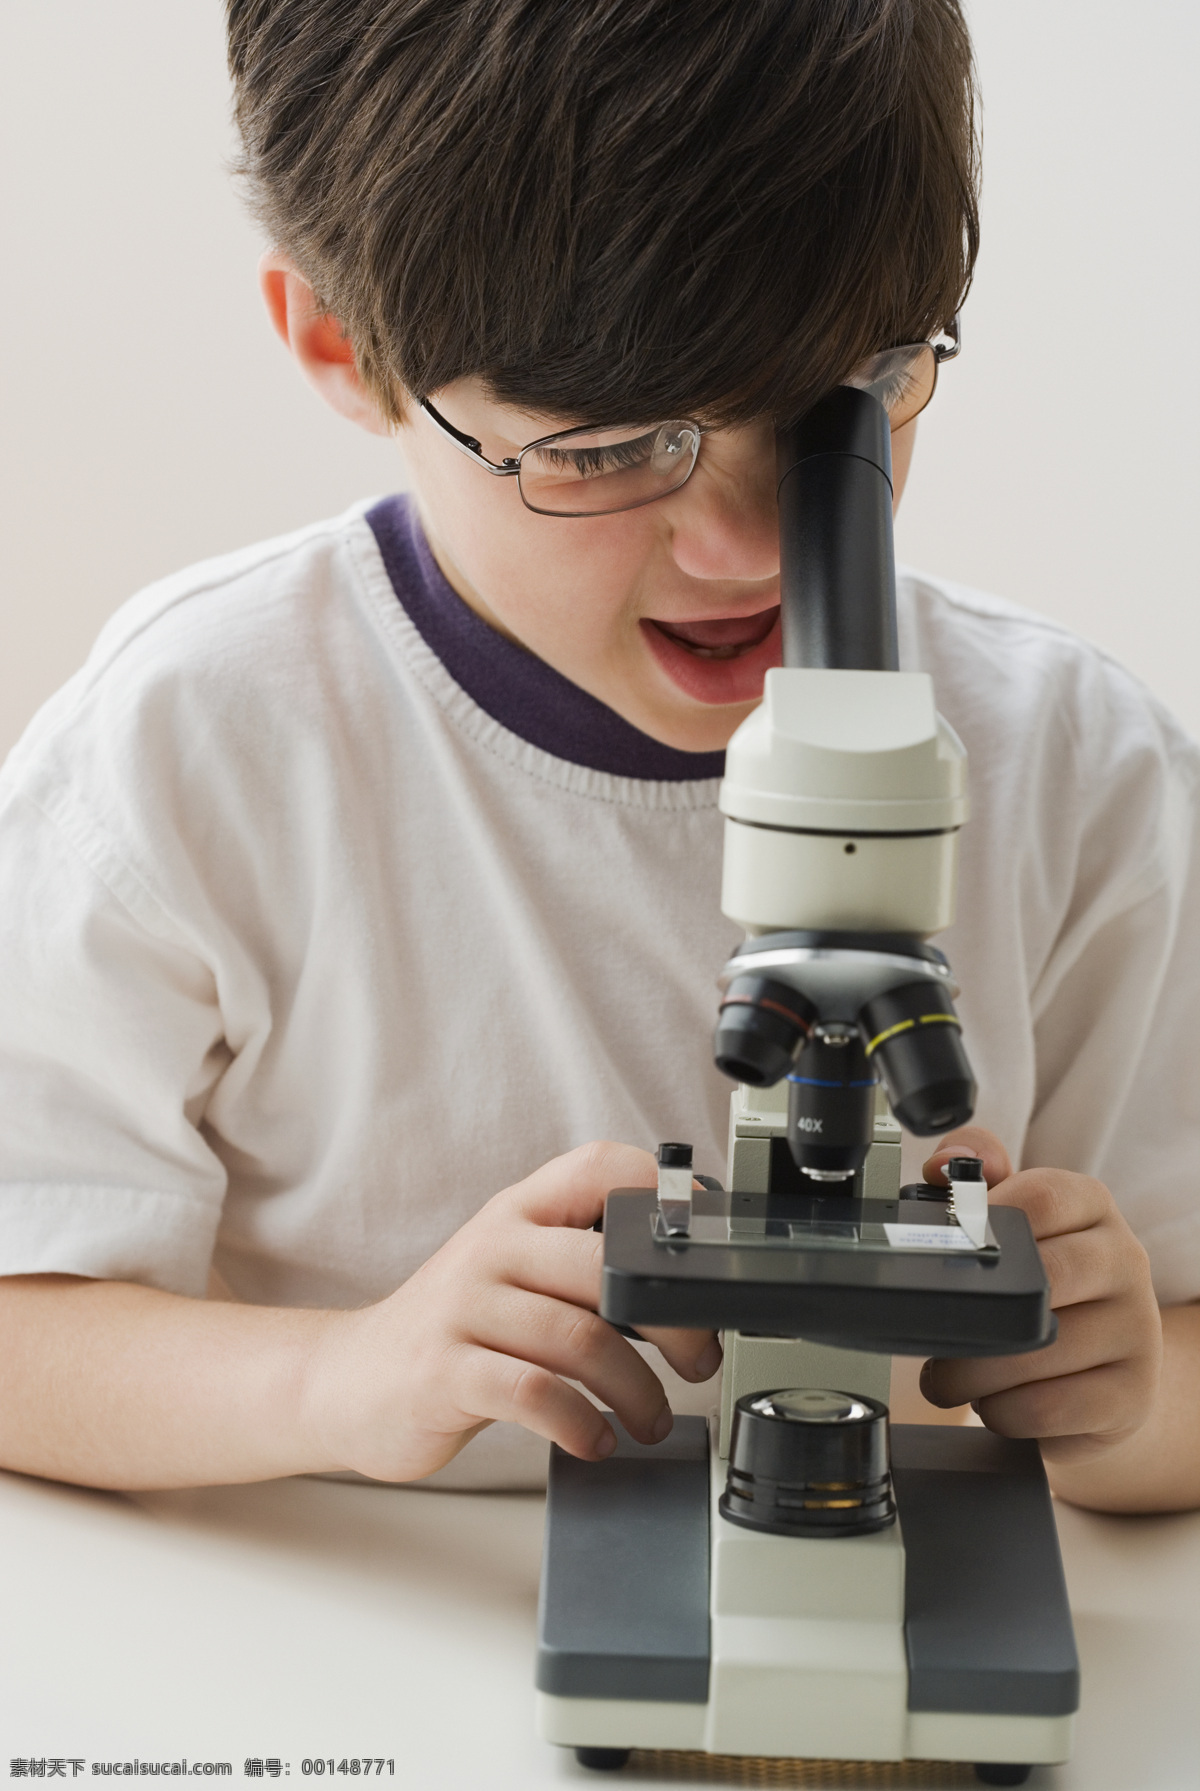 看 显微镜 孩子 研究 科研 探索 神秘 儿童 幼儿 学生 教育 国外孩子 国外儿童 儿童图片 人物图片